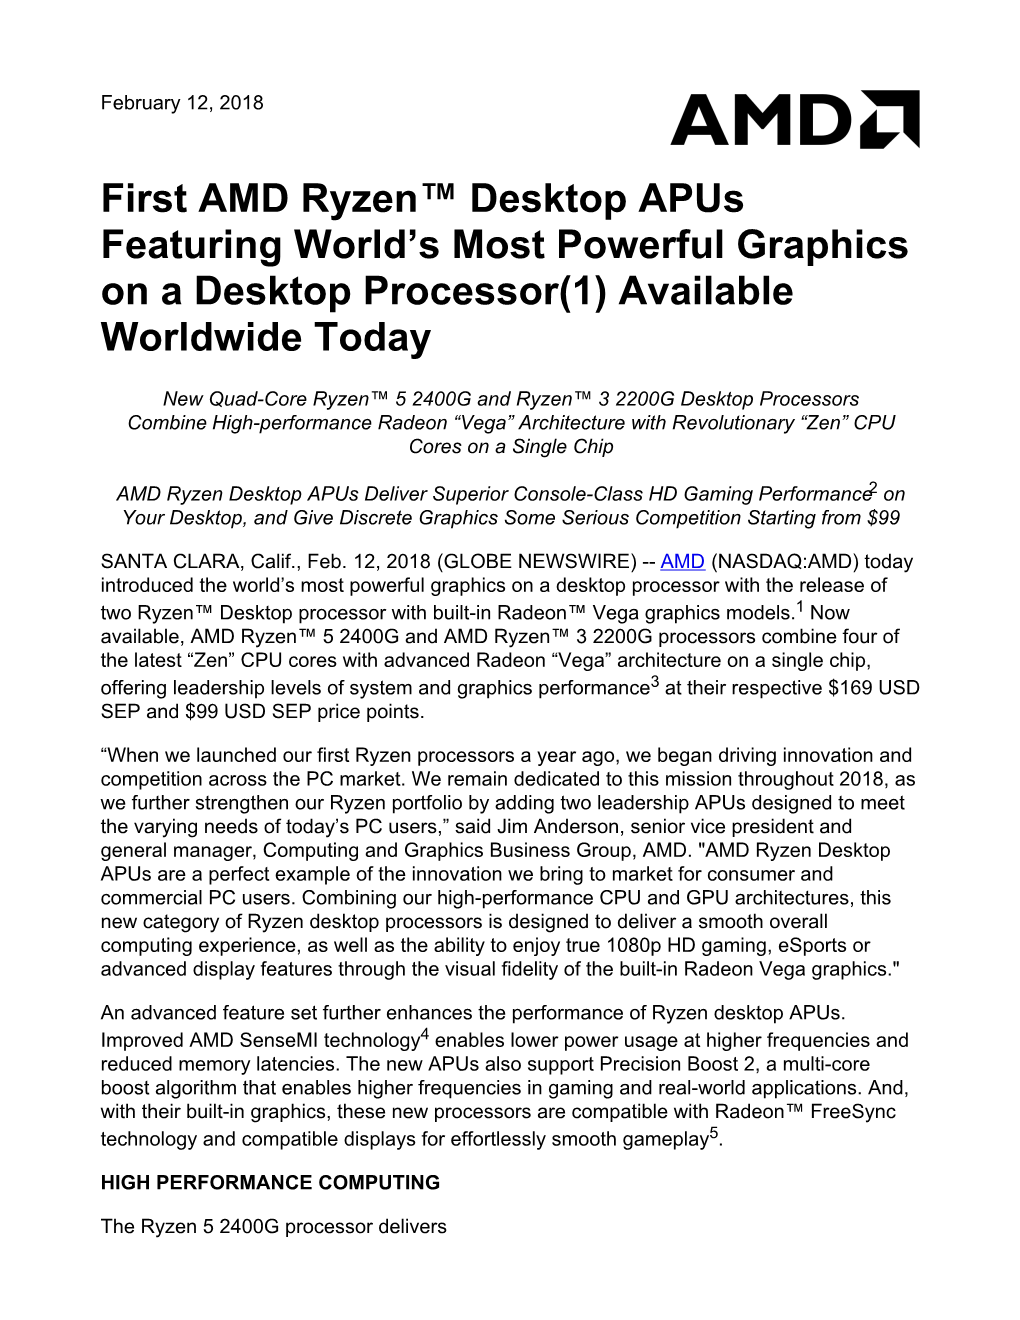 First AMD Ryzen™ Desktop Apus Featuring World's